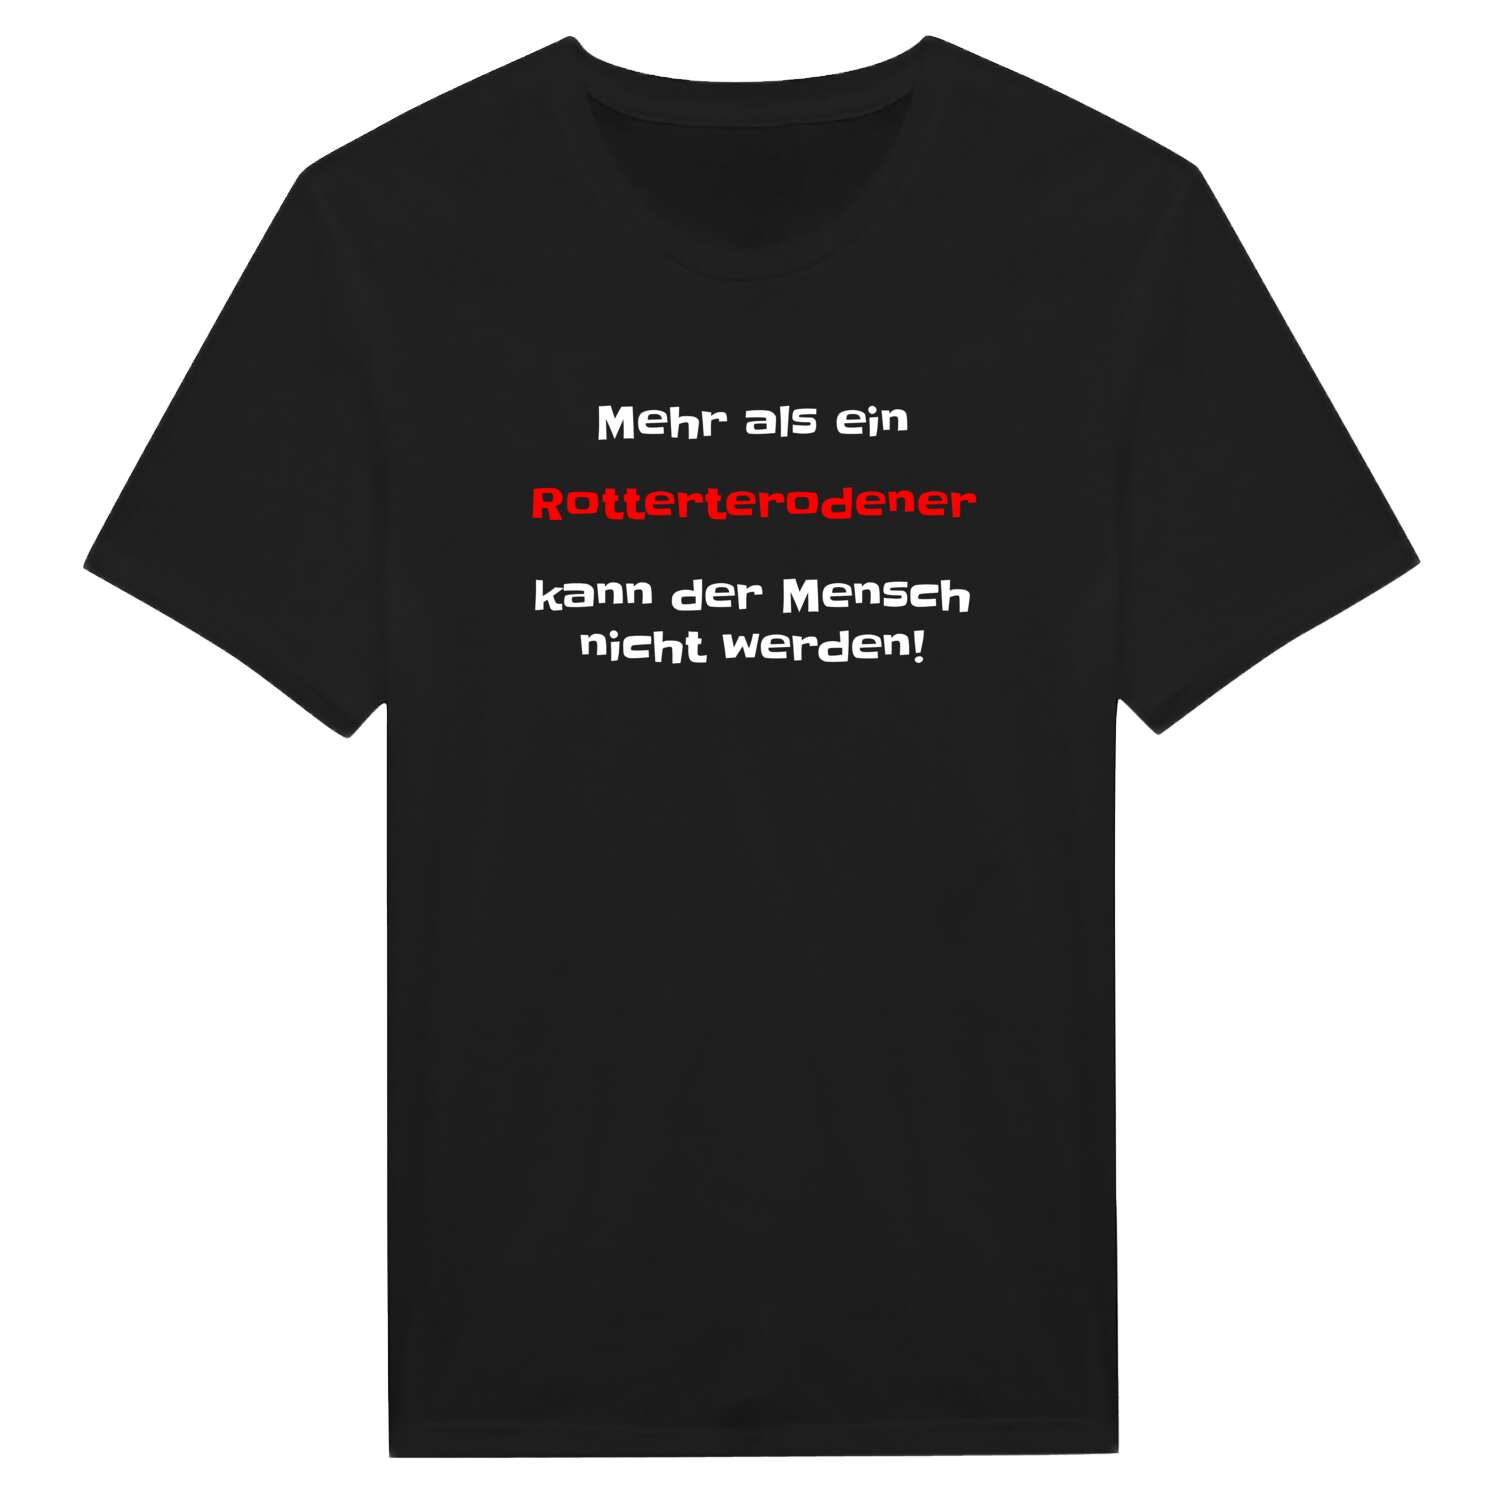 Rotterterode T-Shirt »Mehr als ein«